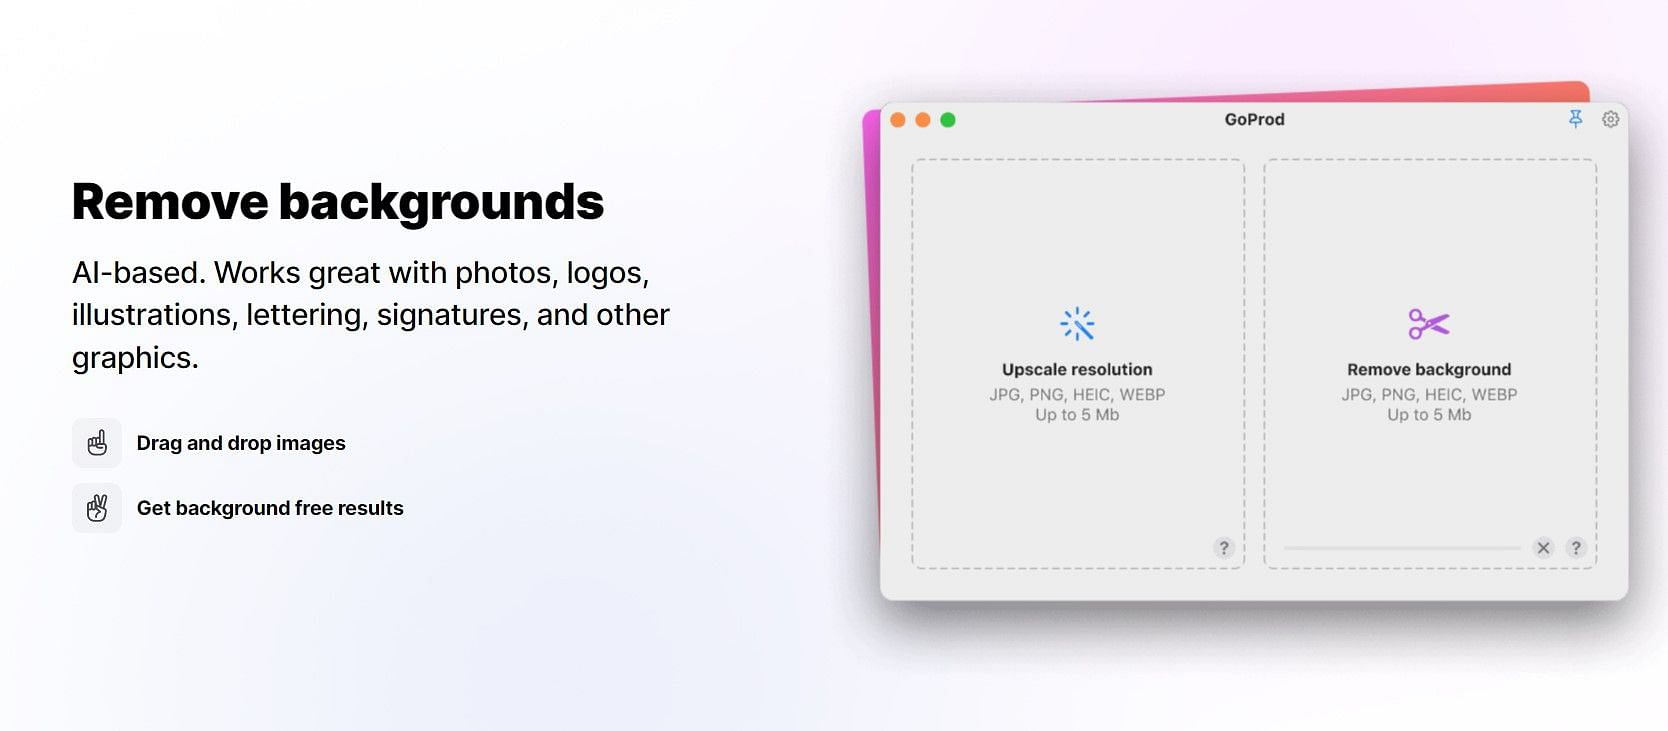 Phần mềm xóa nền và phóng to hình ảnh cho Mac với tính năng độc đáo giúp bạn loại bỏ phông nền để tập trung vào đối tượng chính. Với tính năng phóng to hình ảnh, bạn sẽ khám phá được những chi tiết độc đáo của bức ảnh. Đây sẽ là công cụ hữu ích cho những người yêu thích chỉnh sửa ảnh.